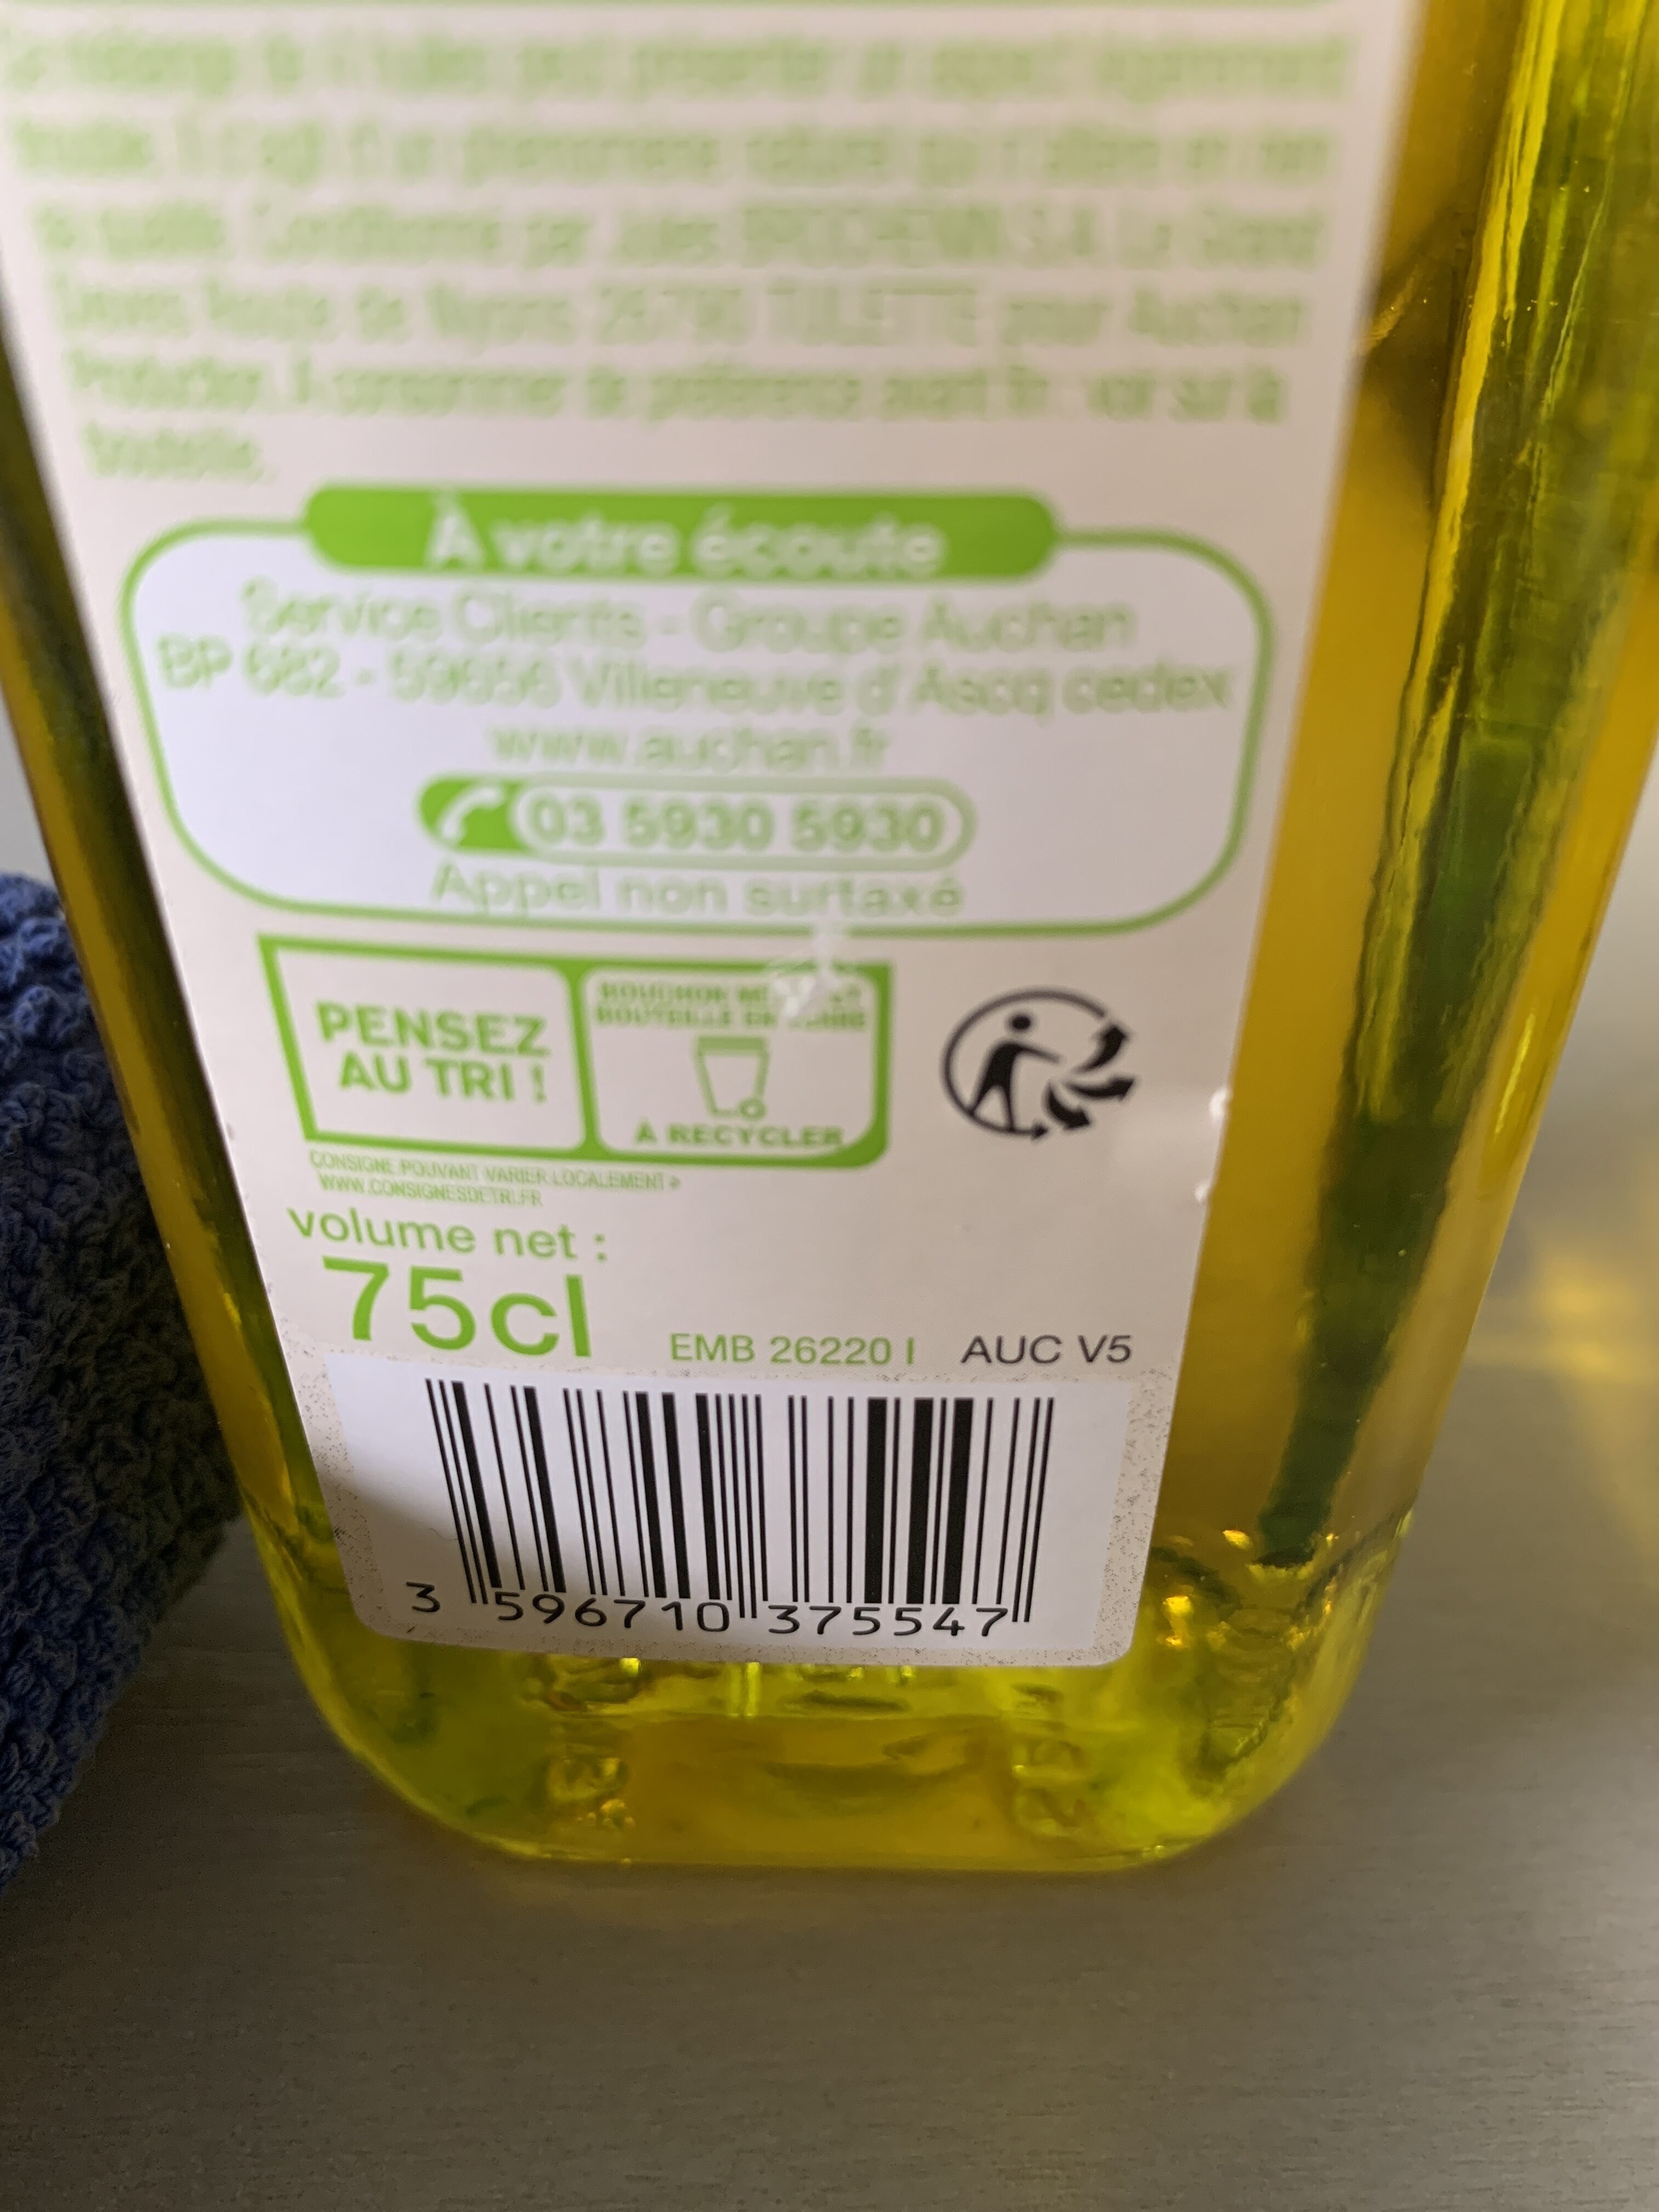 4 huiles vierges - Instruction de recyclage et/ou informations d'emballage